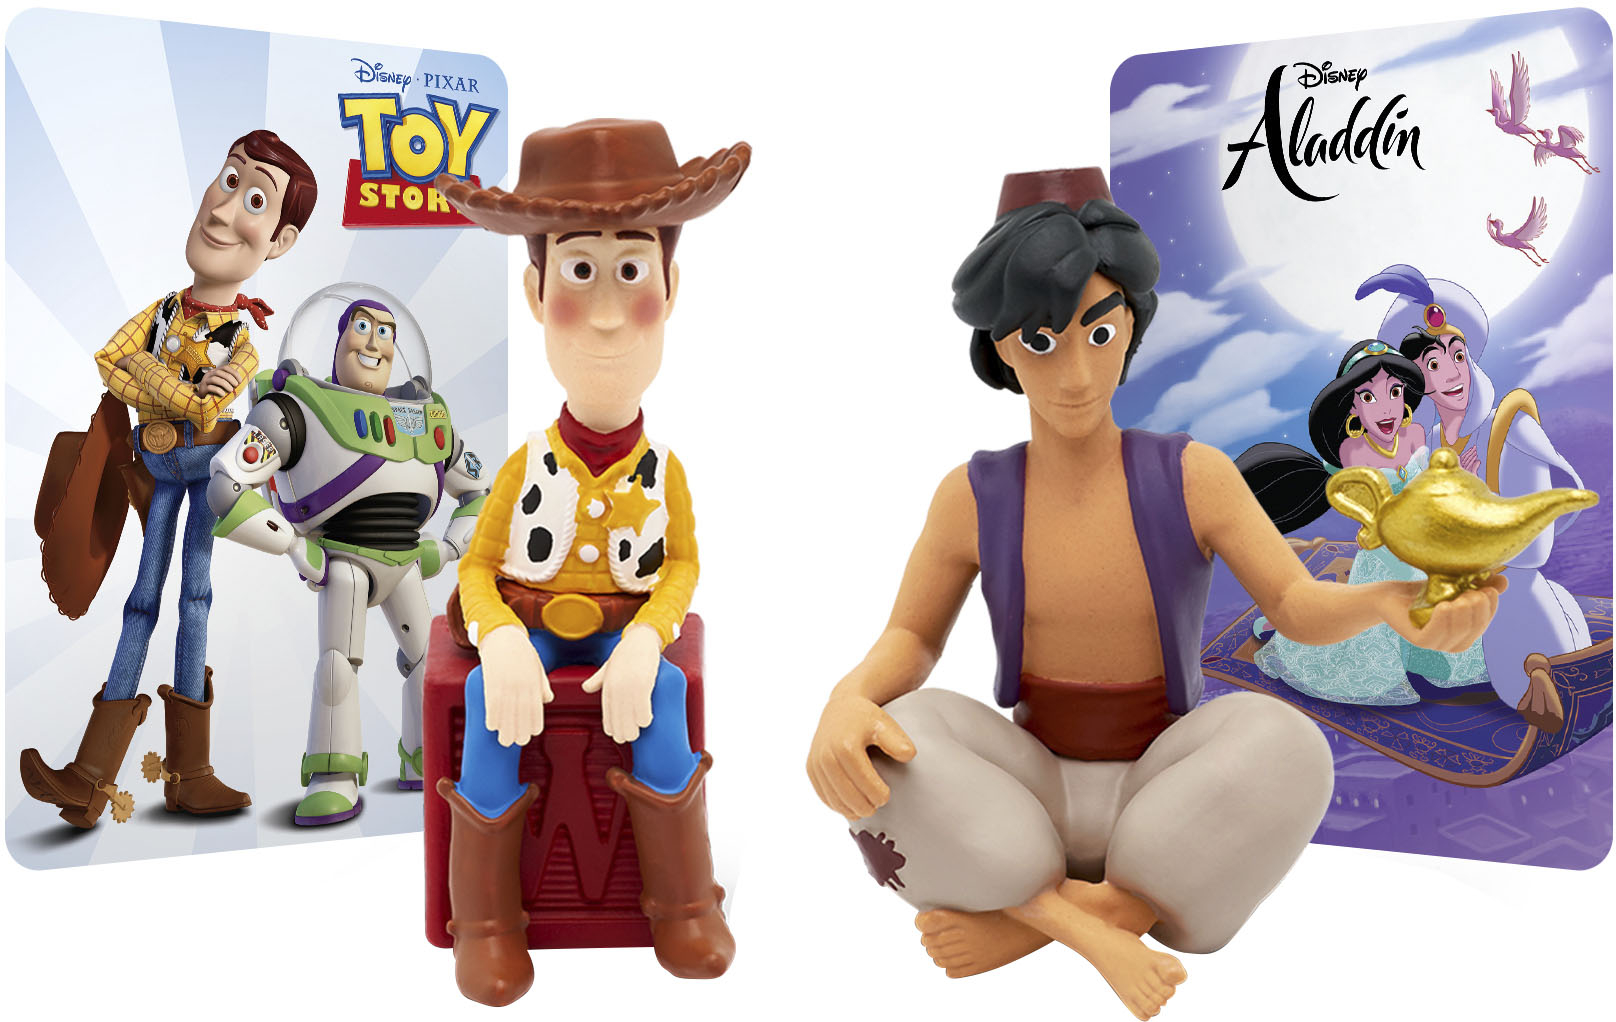 Tonie Audio Play Figurine - Disney & Pixar Toy Story 2: Buzz Lightyear